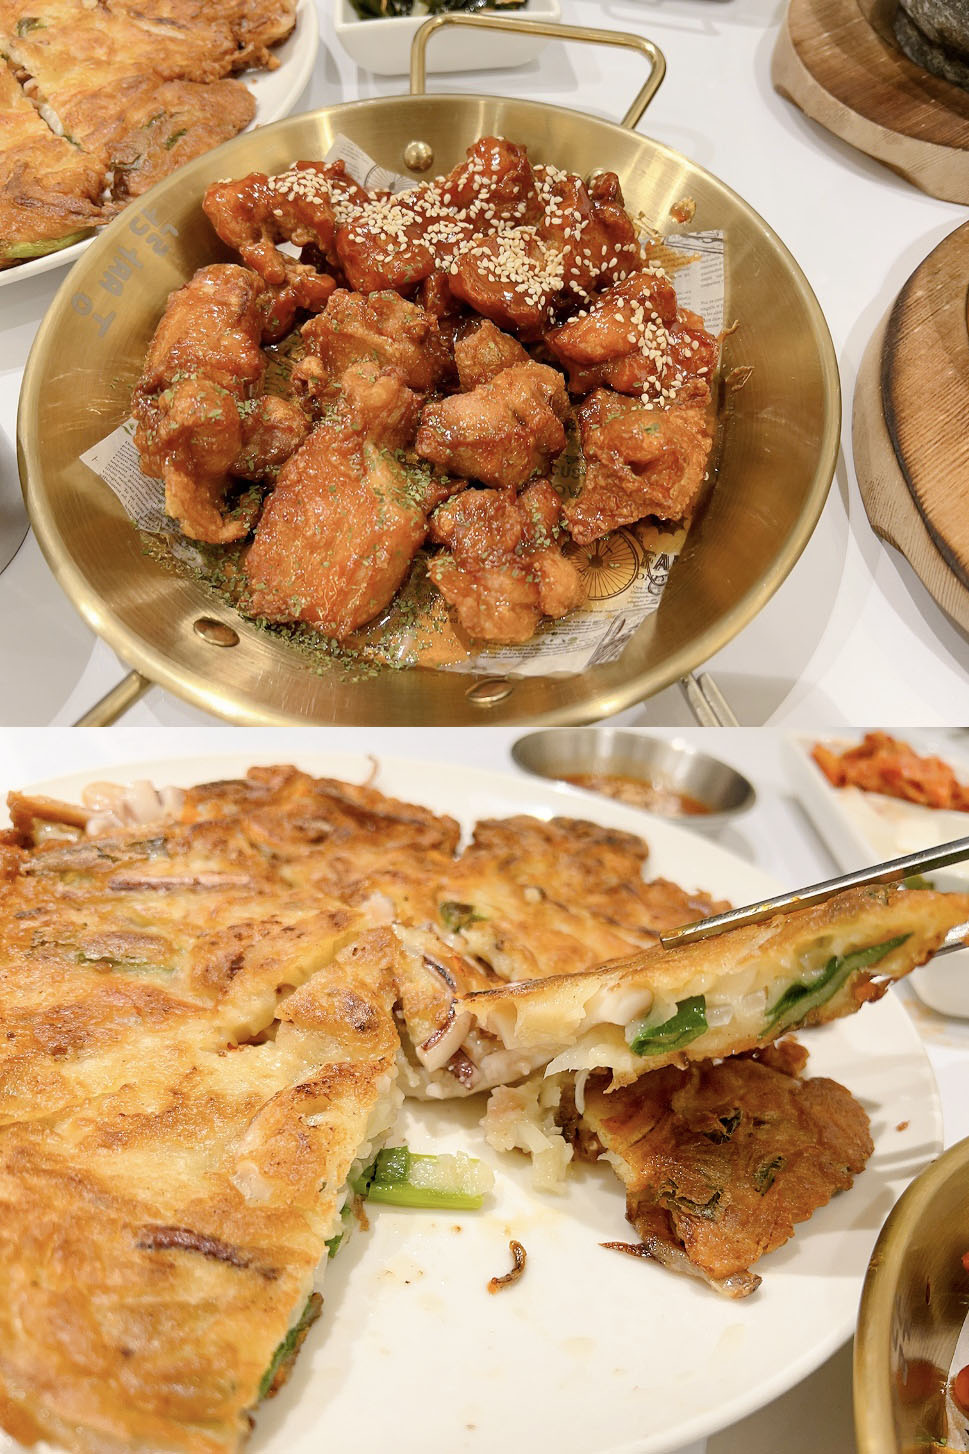 歐吧噠韓餐酒 오빠닭 한국음식점 韓式料理12.jpg